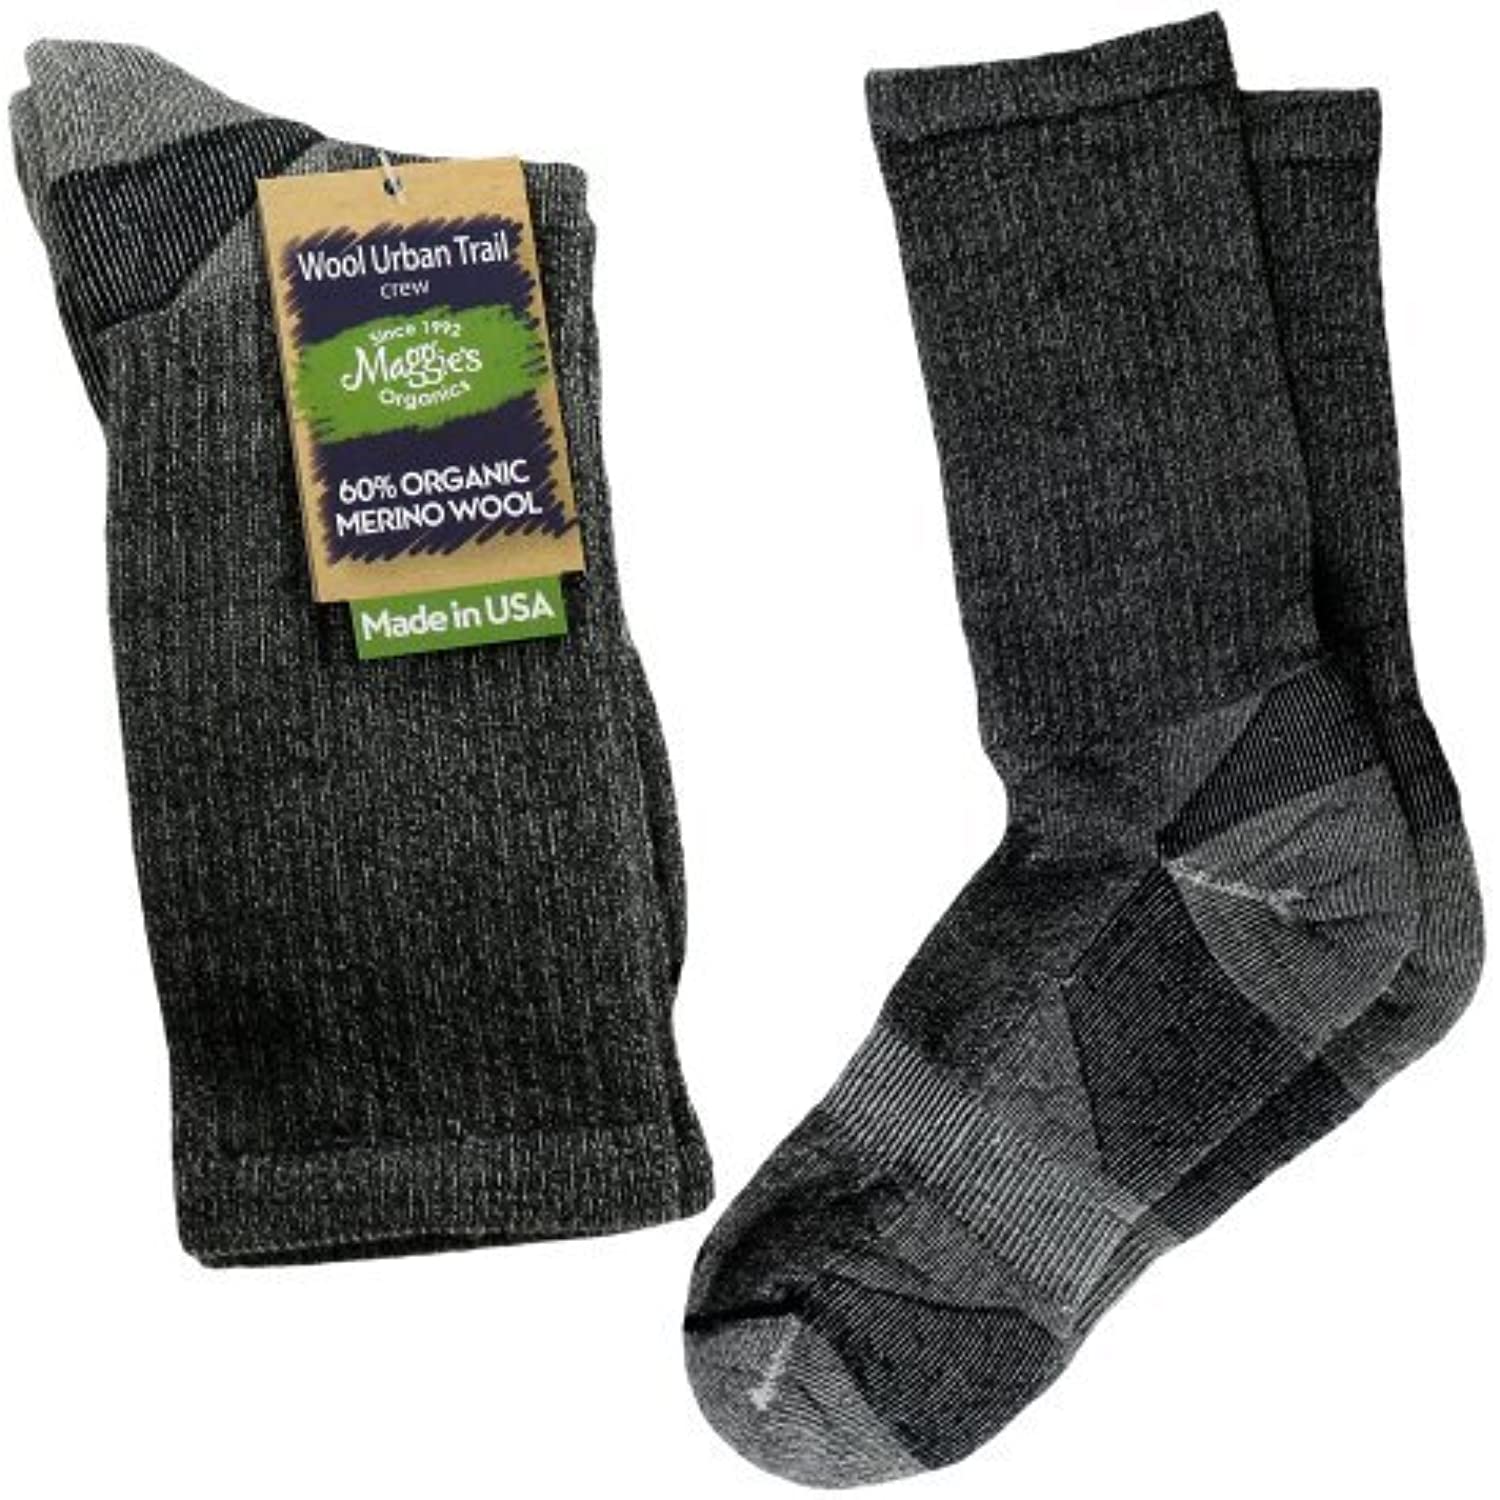 Maggie’s Organics Urban Trail Wool Socks (10-13 Crew, Black)